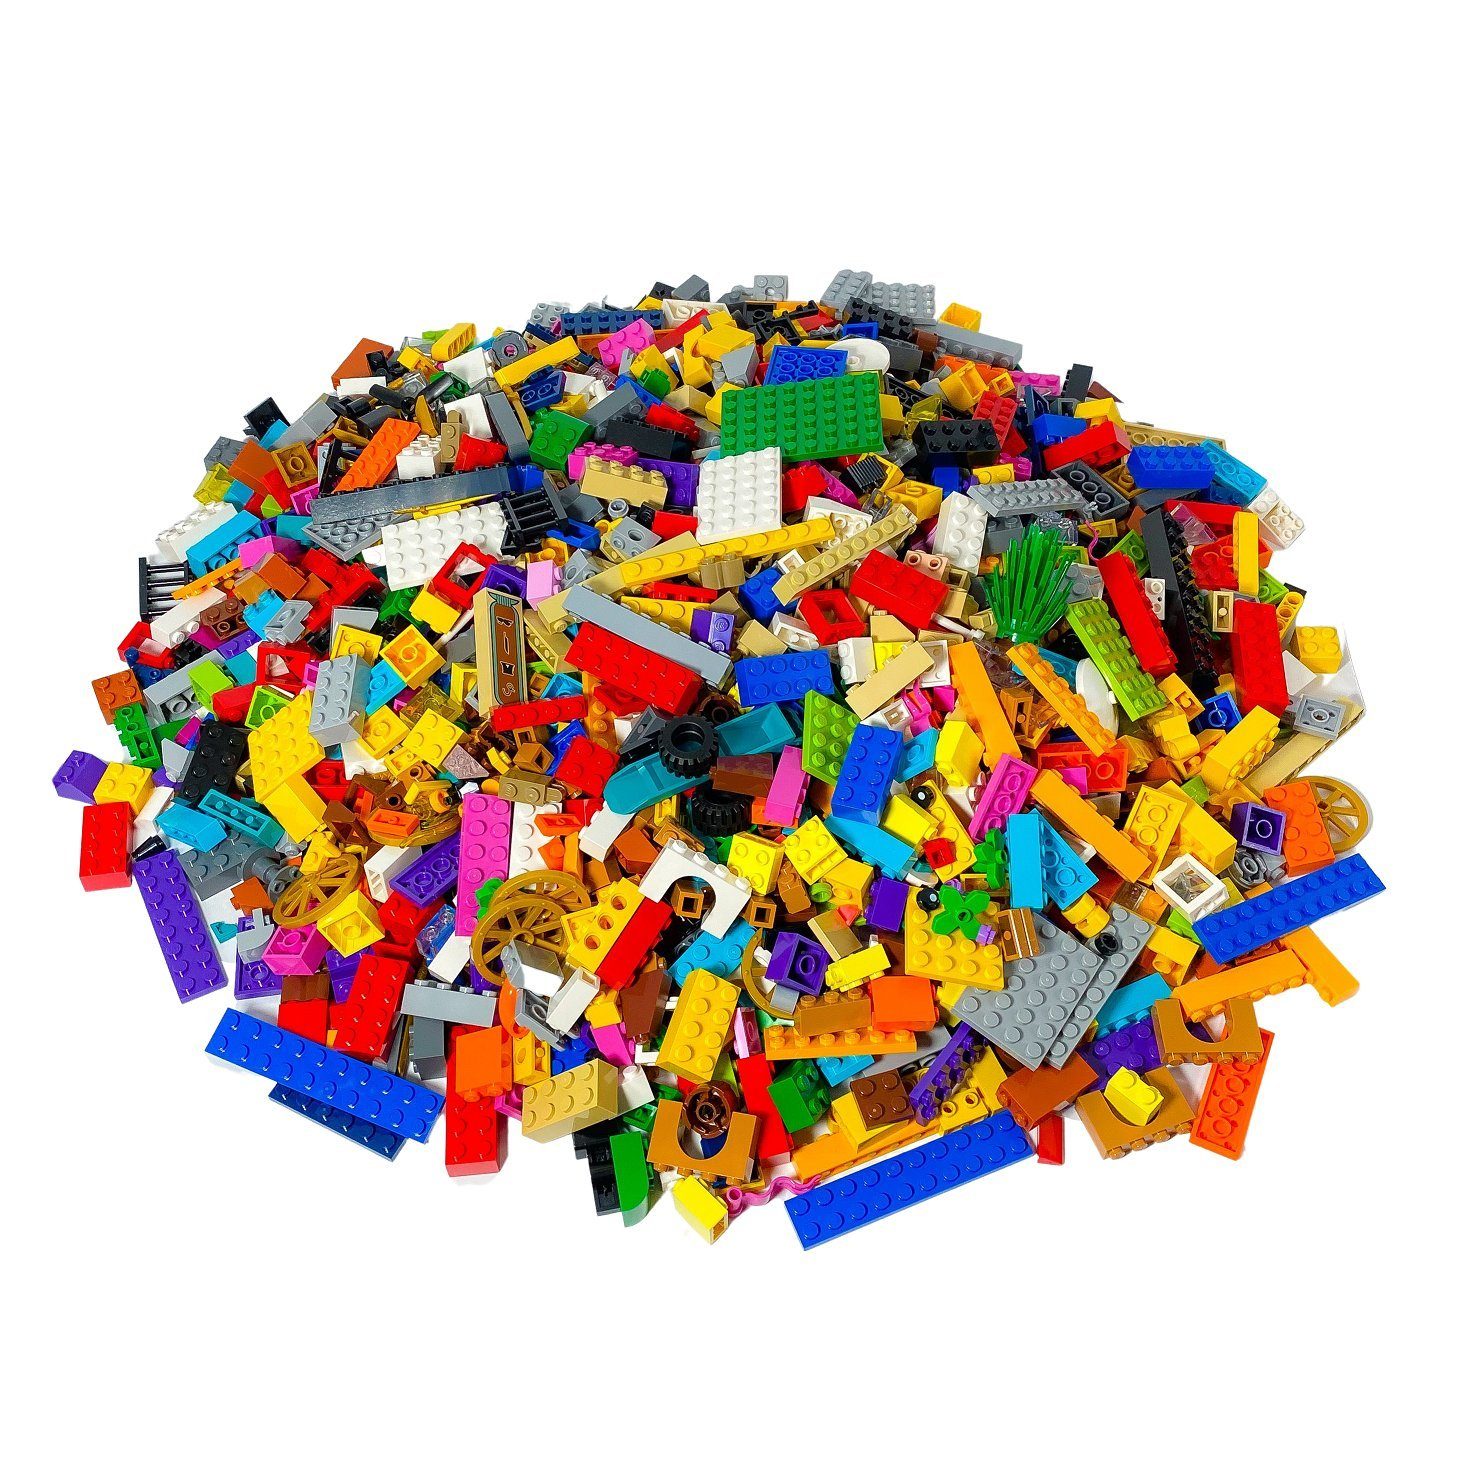 LEGO® Spielbausteine LEGO® Steine Bunt gemischt - 800 gr. - ca. 800 Stück - Colorful bricks mix - NEU, (Creativ-Set, 800 St), Made in Europe